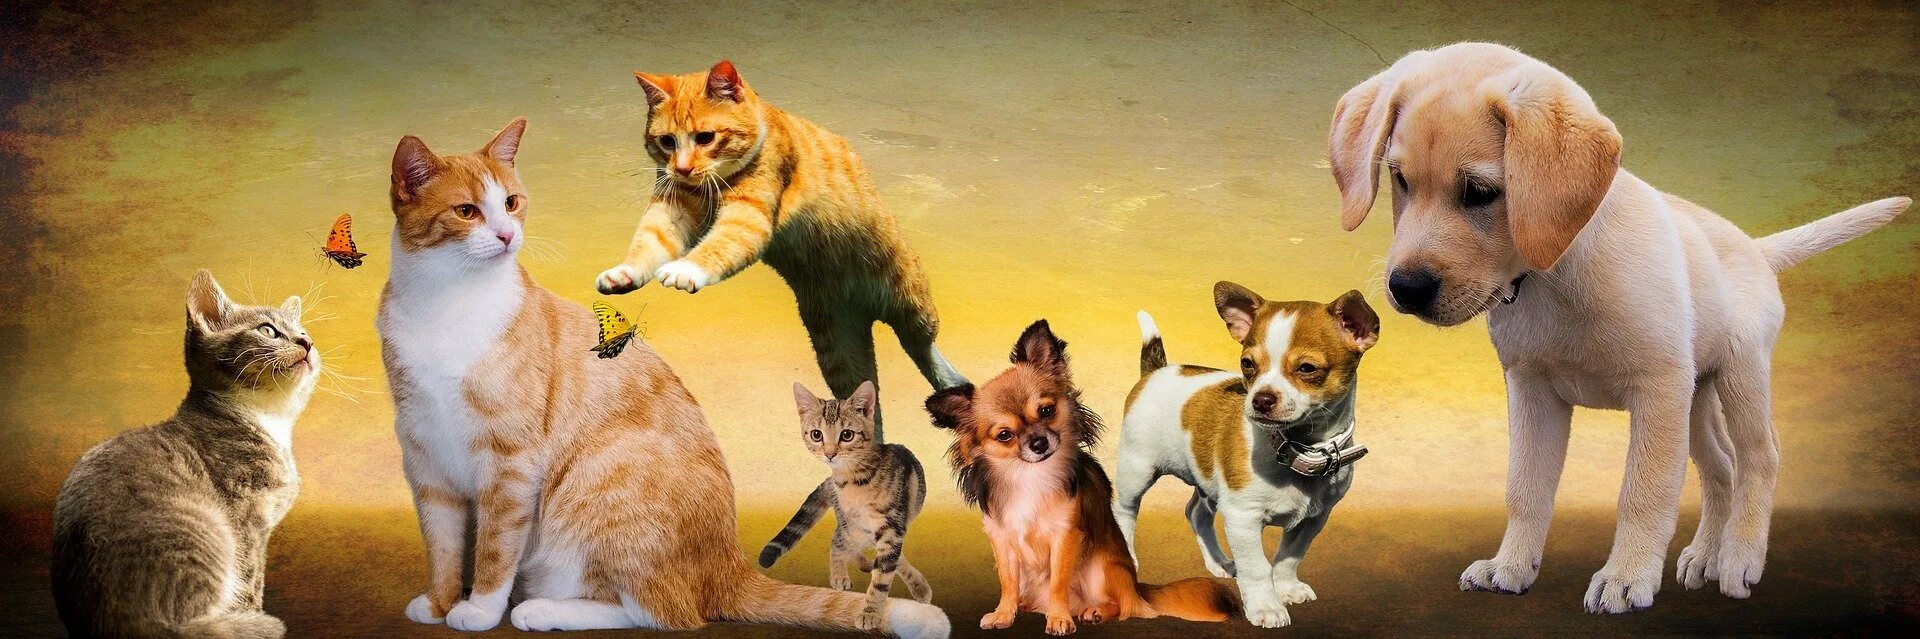 Ютуб канал собаки. Rjireb b CJ,FRB. Кошки и собаки. Щенок и котенок. Фон для домашних животных.